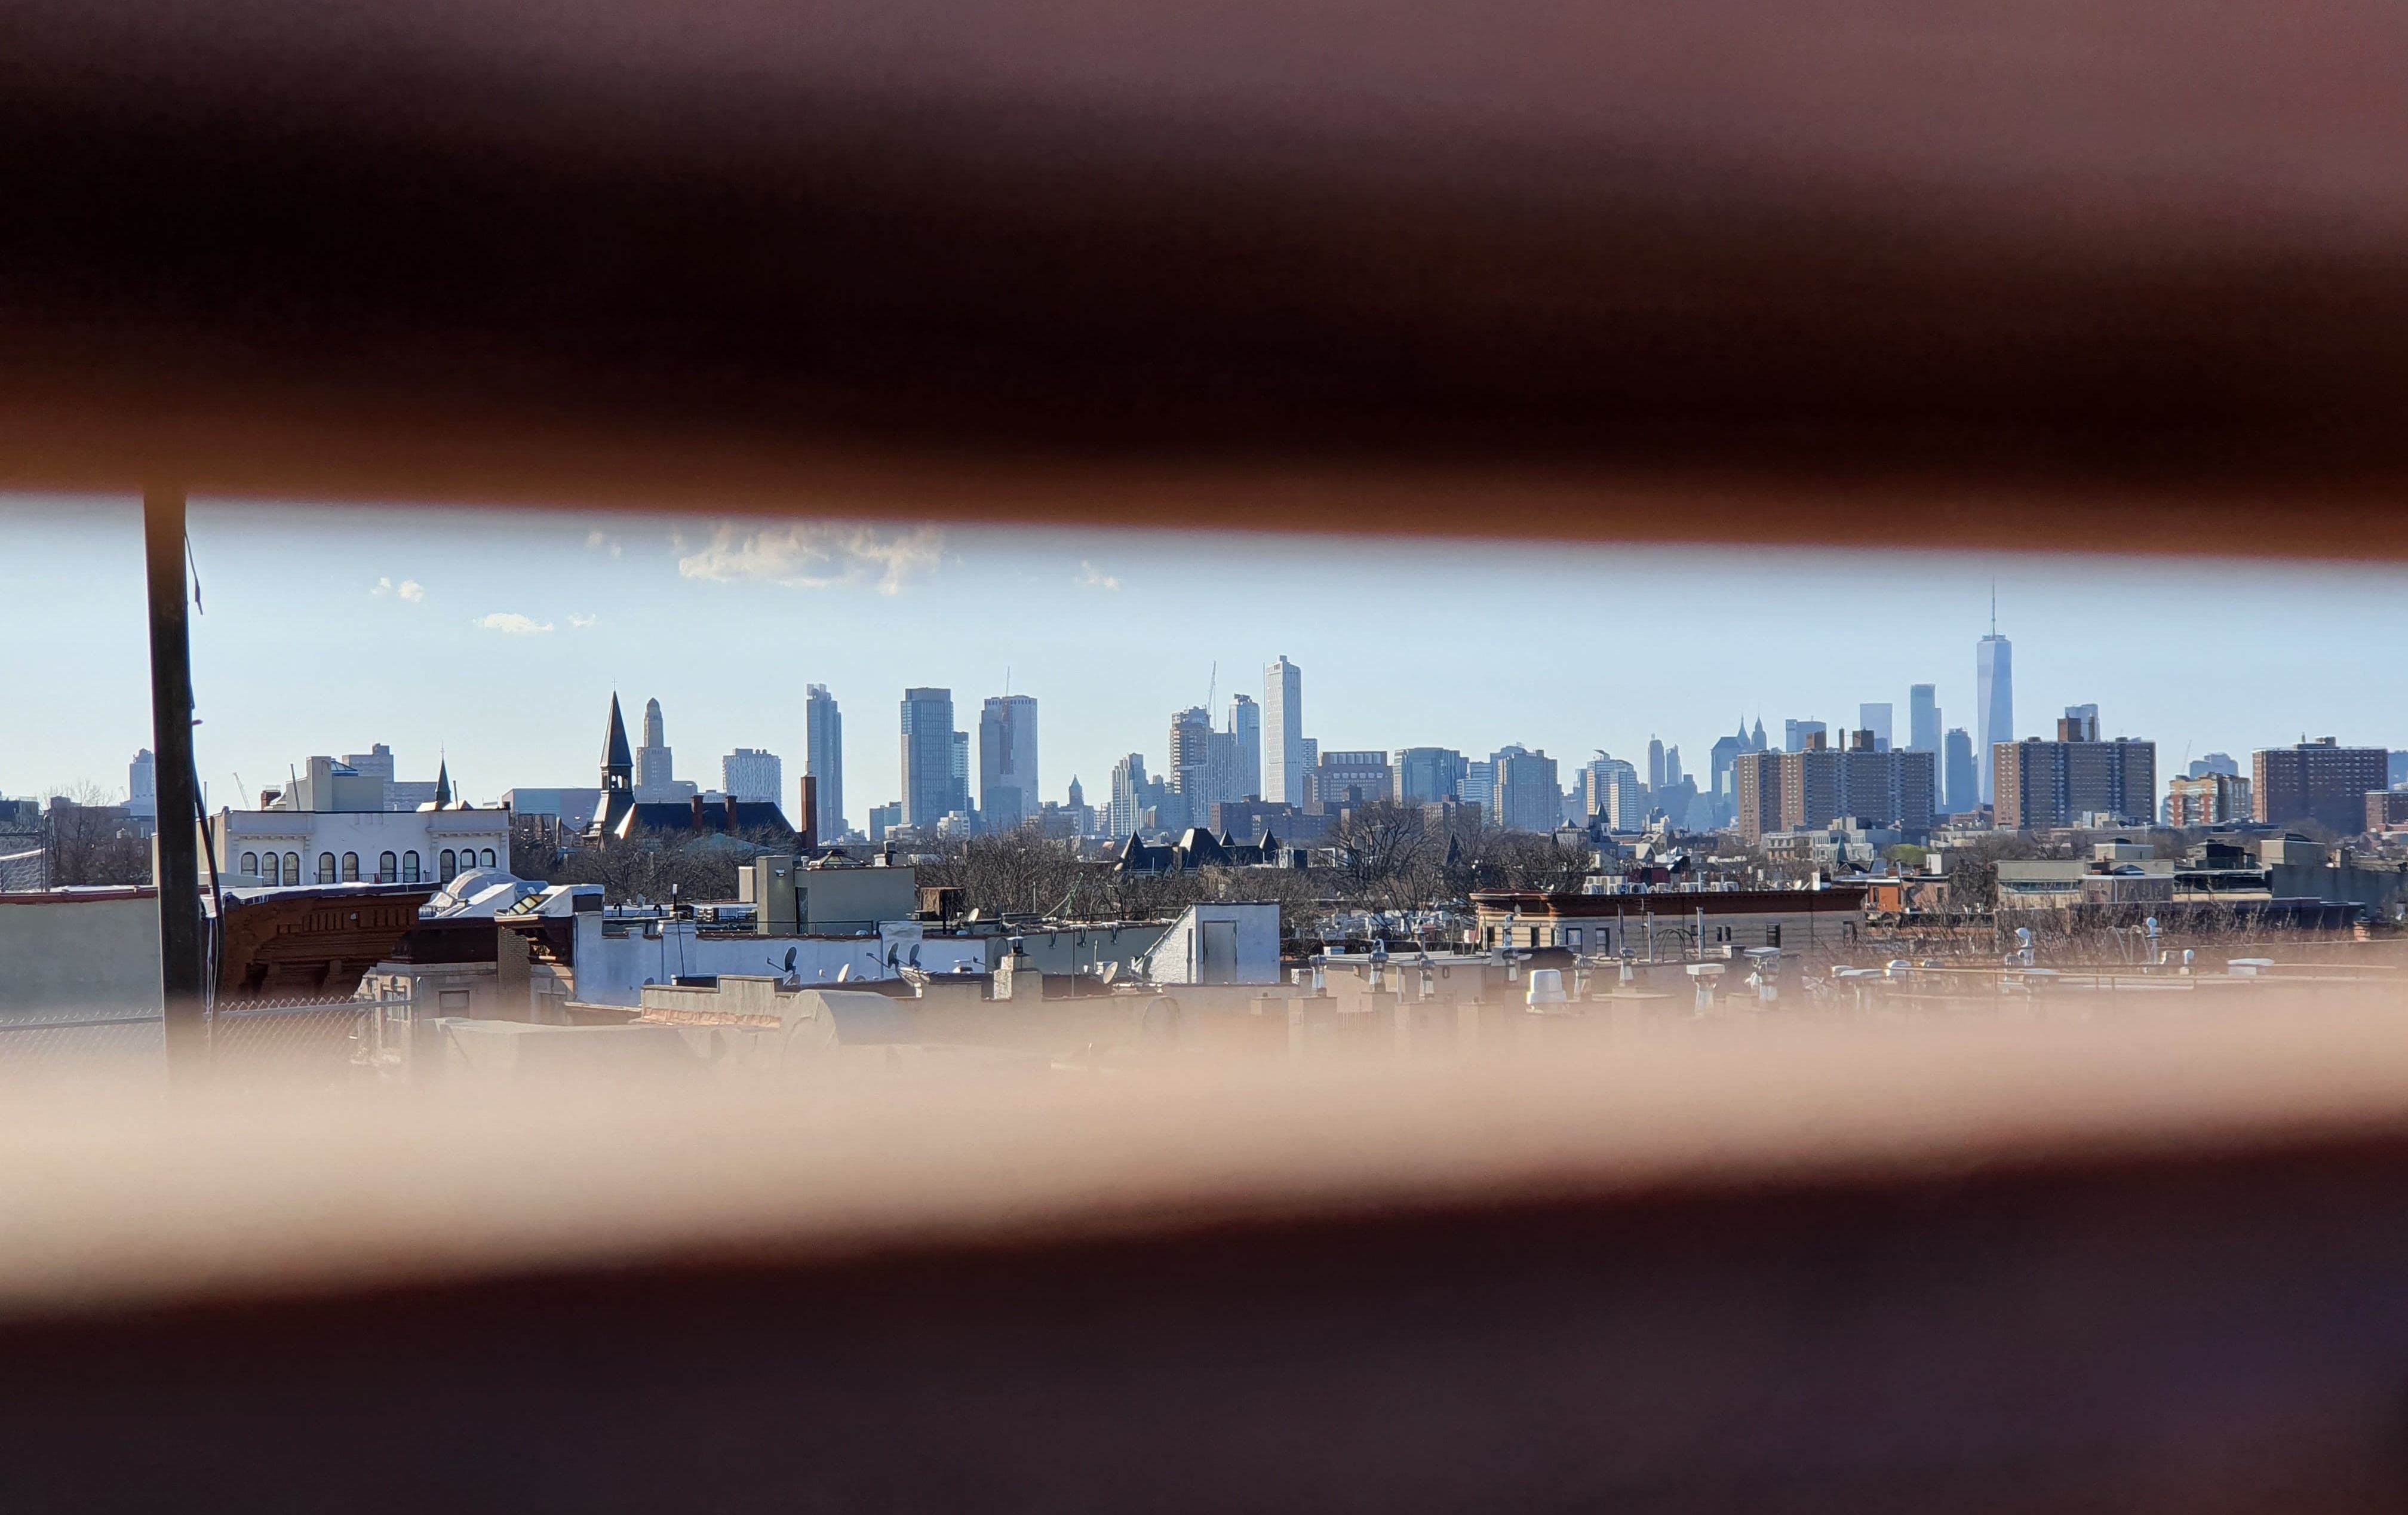 Manhattan seen from a Brooklyn rooftop